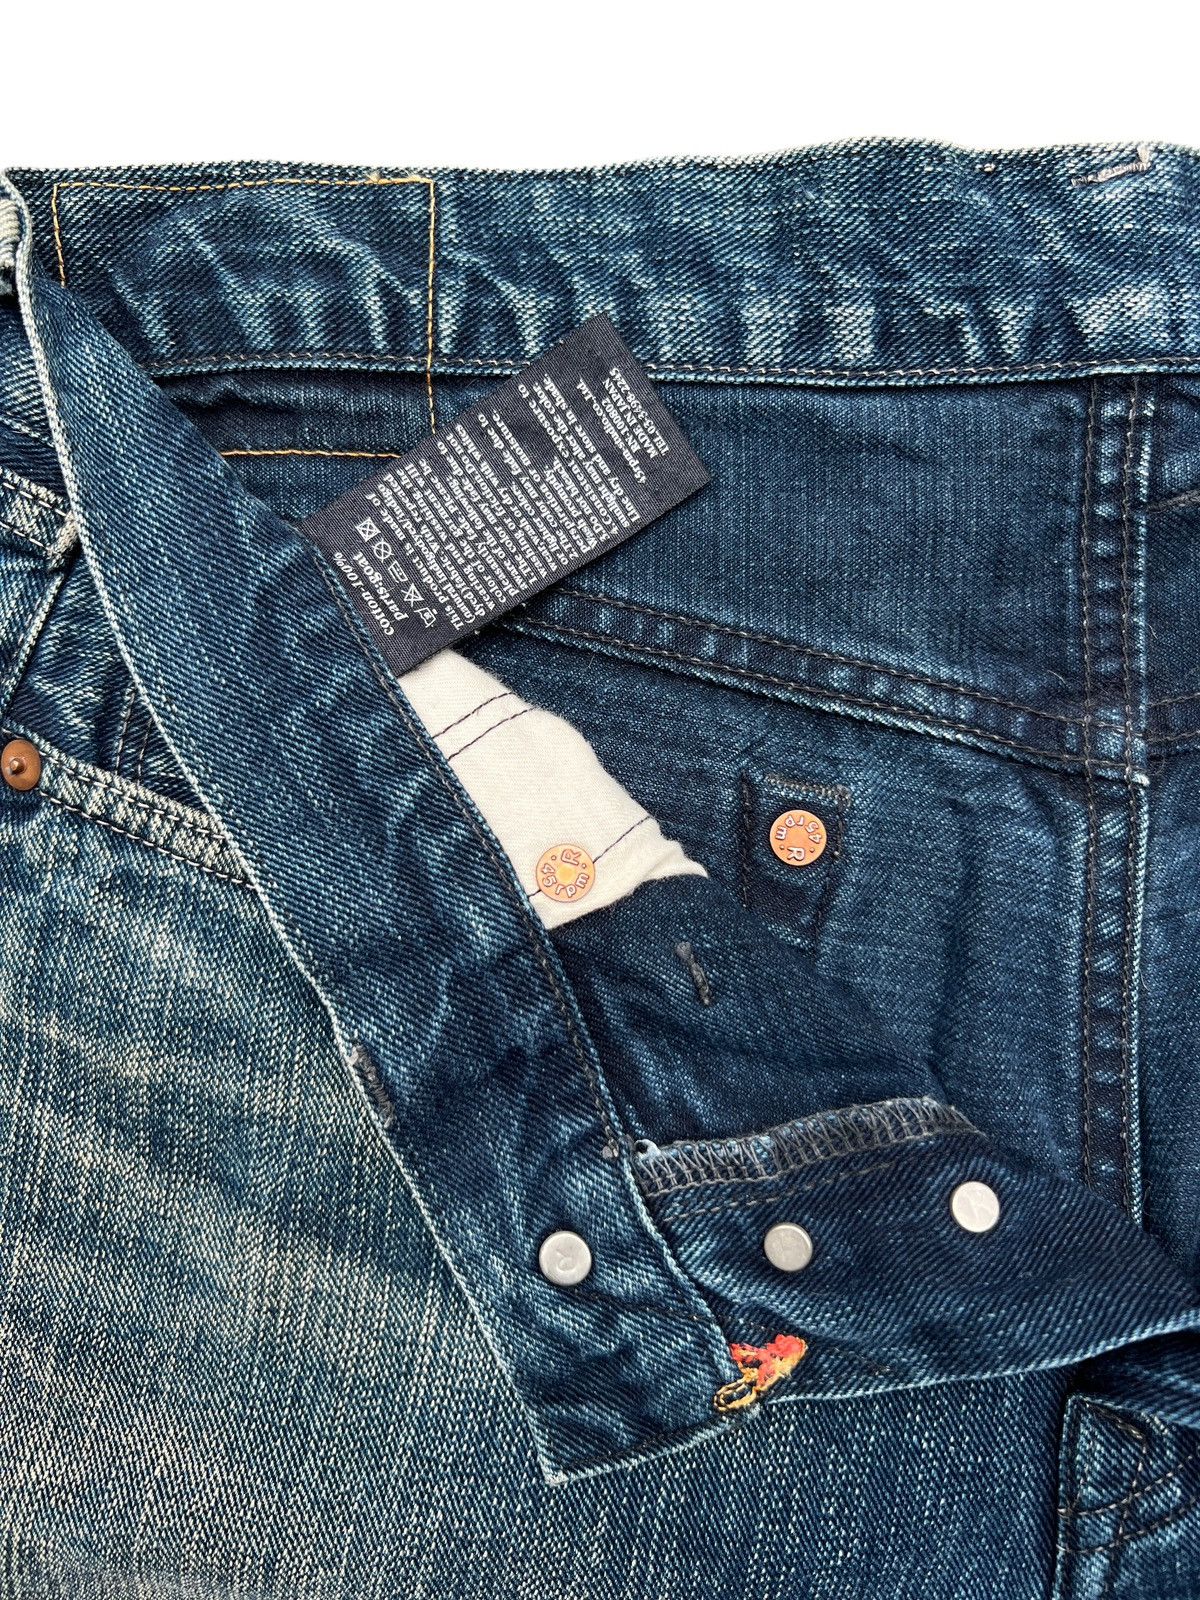 Vintage 45RPM Japan Faded Mudwash Denim Jeans 33x33 - 6